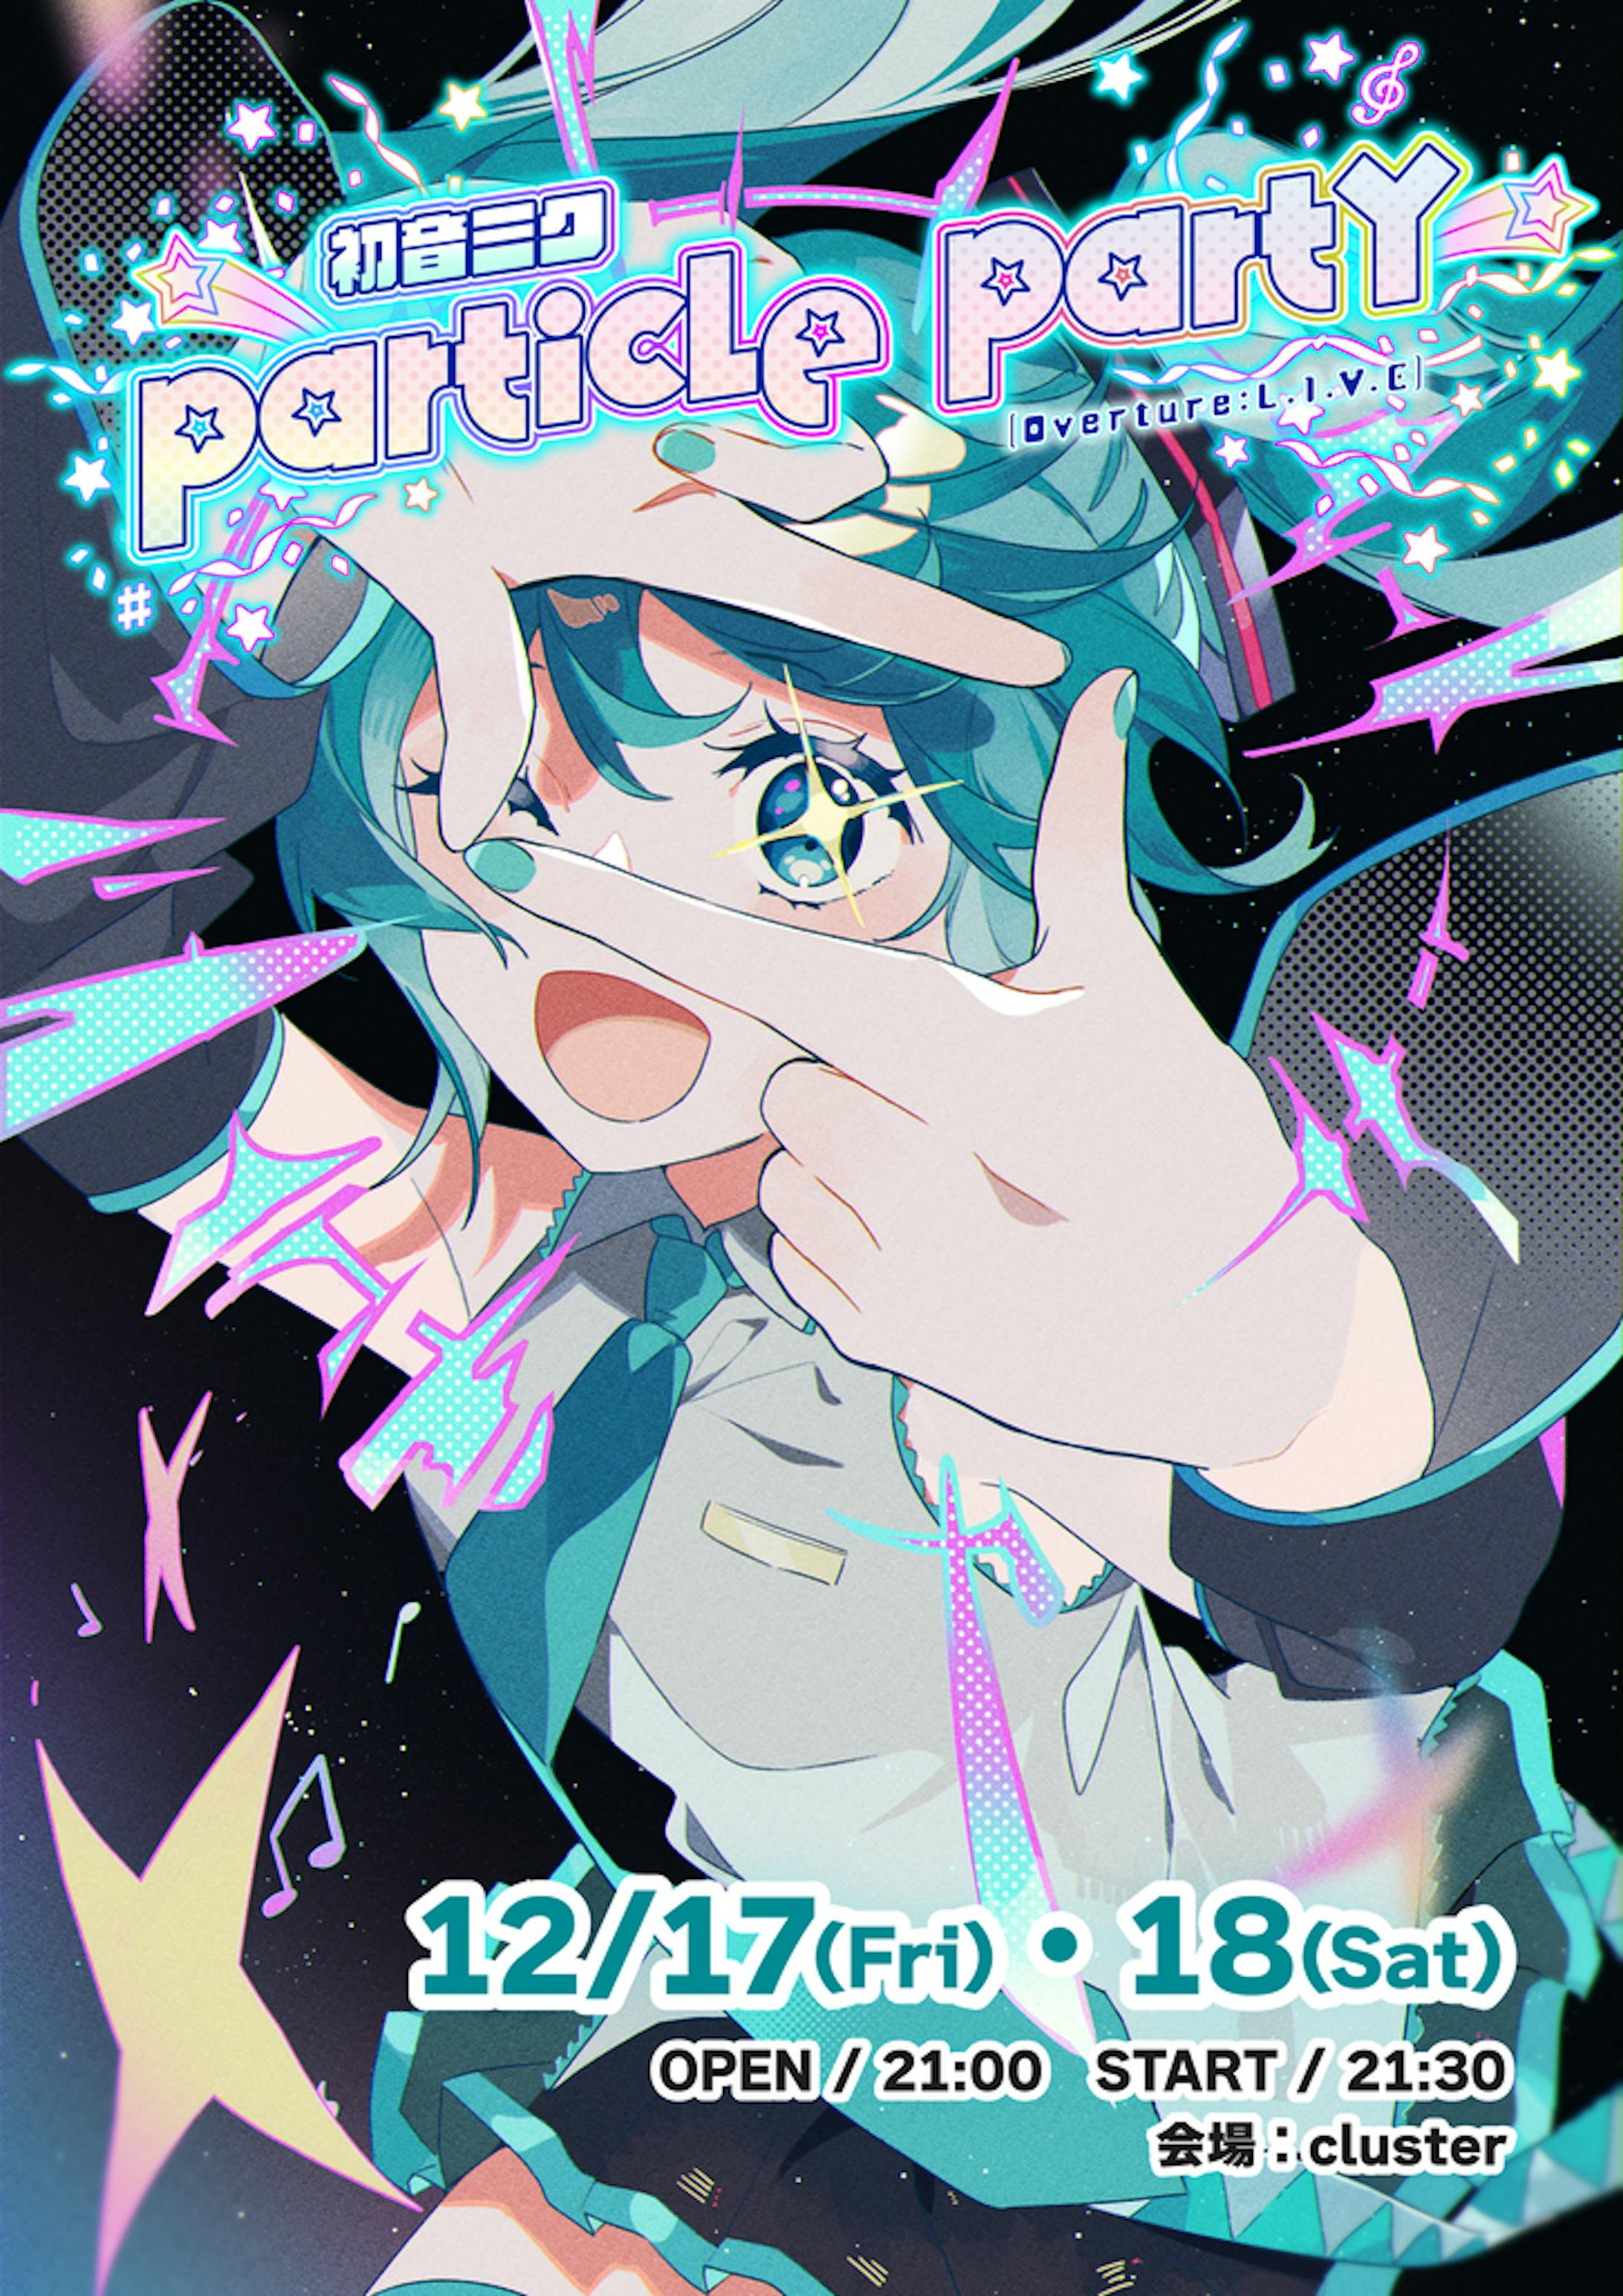 《演出制作》初音ミク Particle Party [Overture:L.1.V.E.]-1